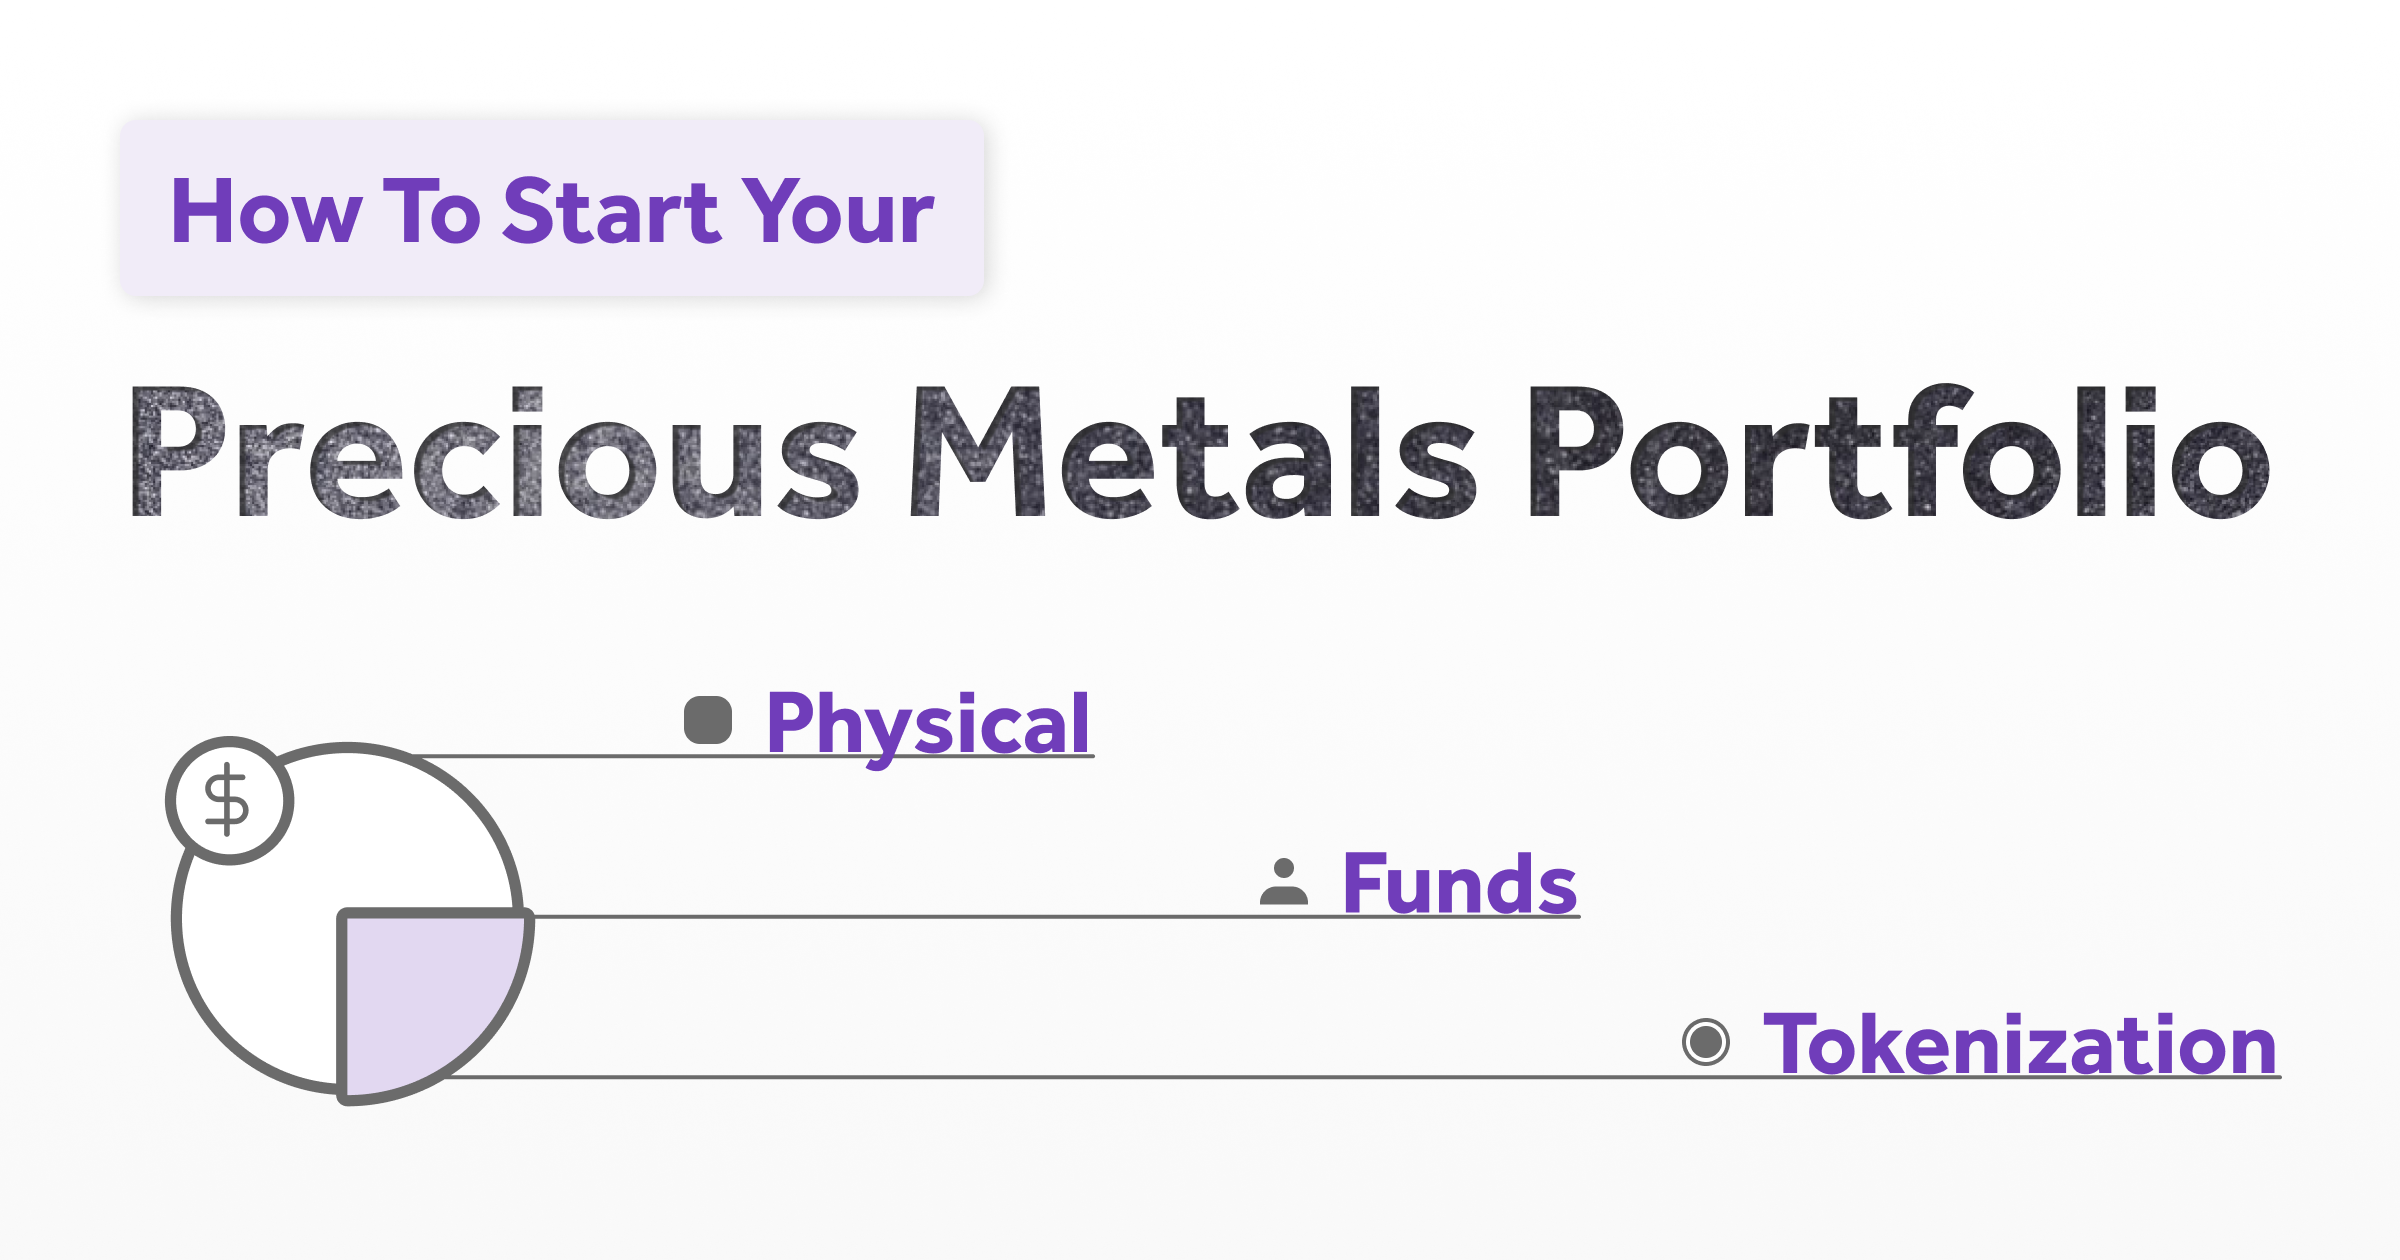 How To Start Your Precious Metals Portfolio